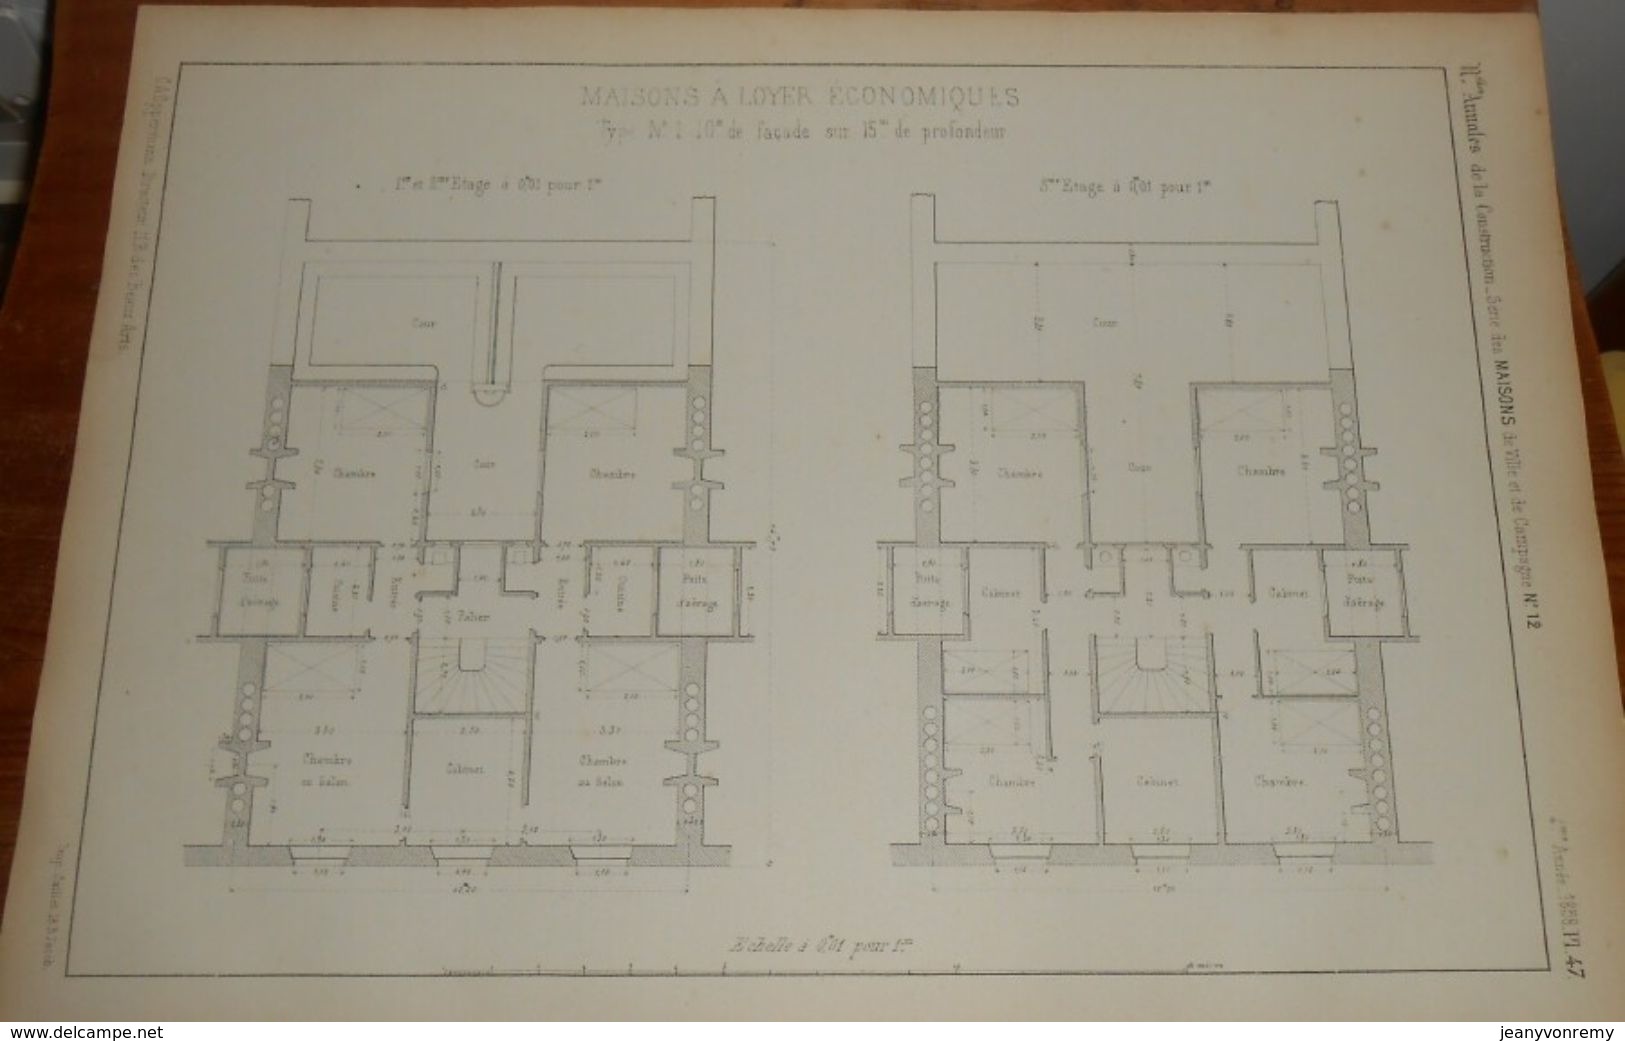 Plan De Maison à Loyer économique. 1858 - Obras Públicas